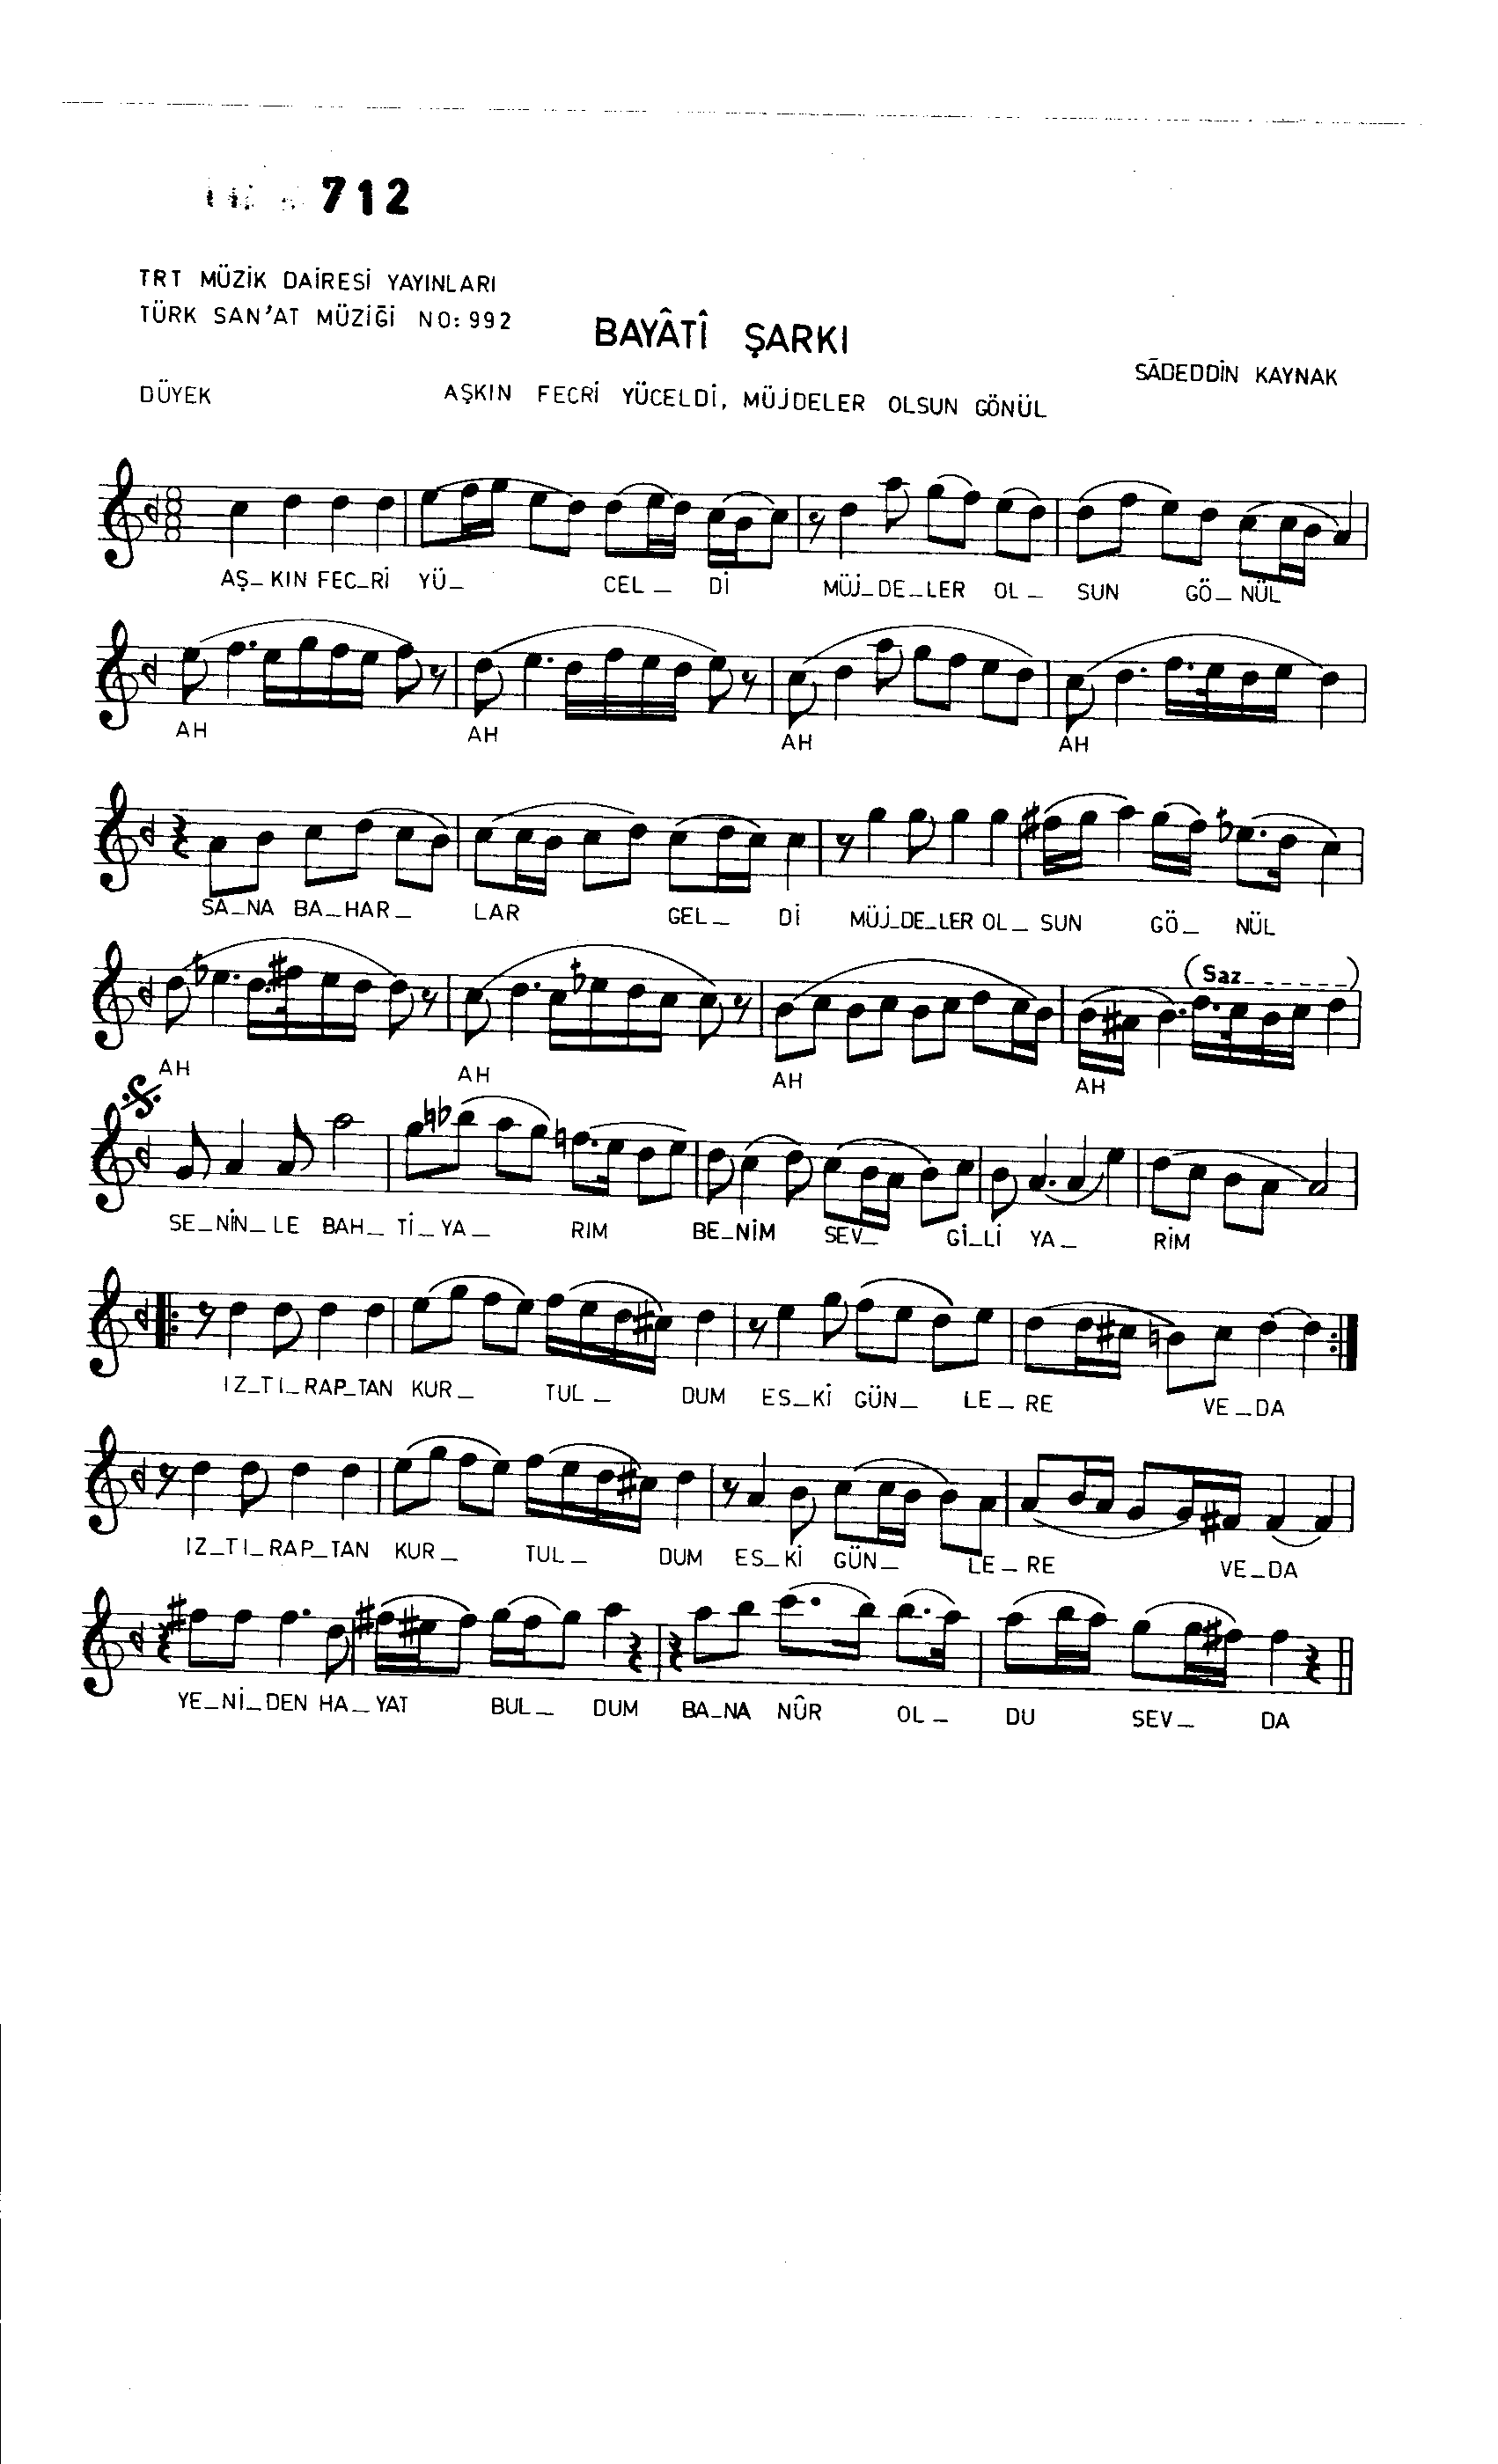 Beyâtî - Şarkı - Sadettin Kaynak - Sayfa 1